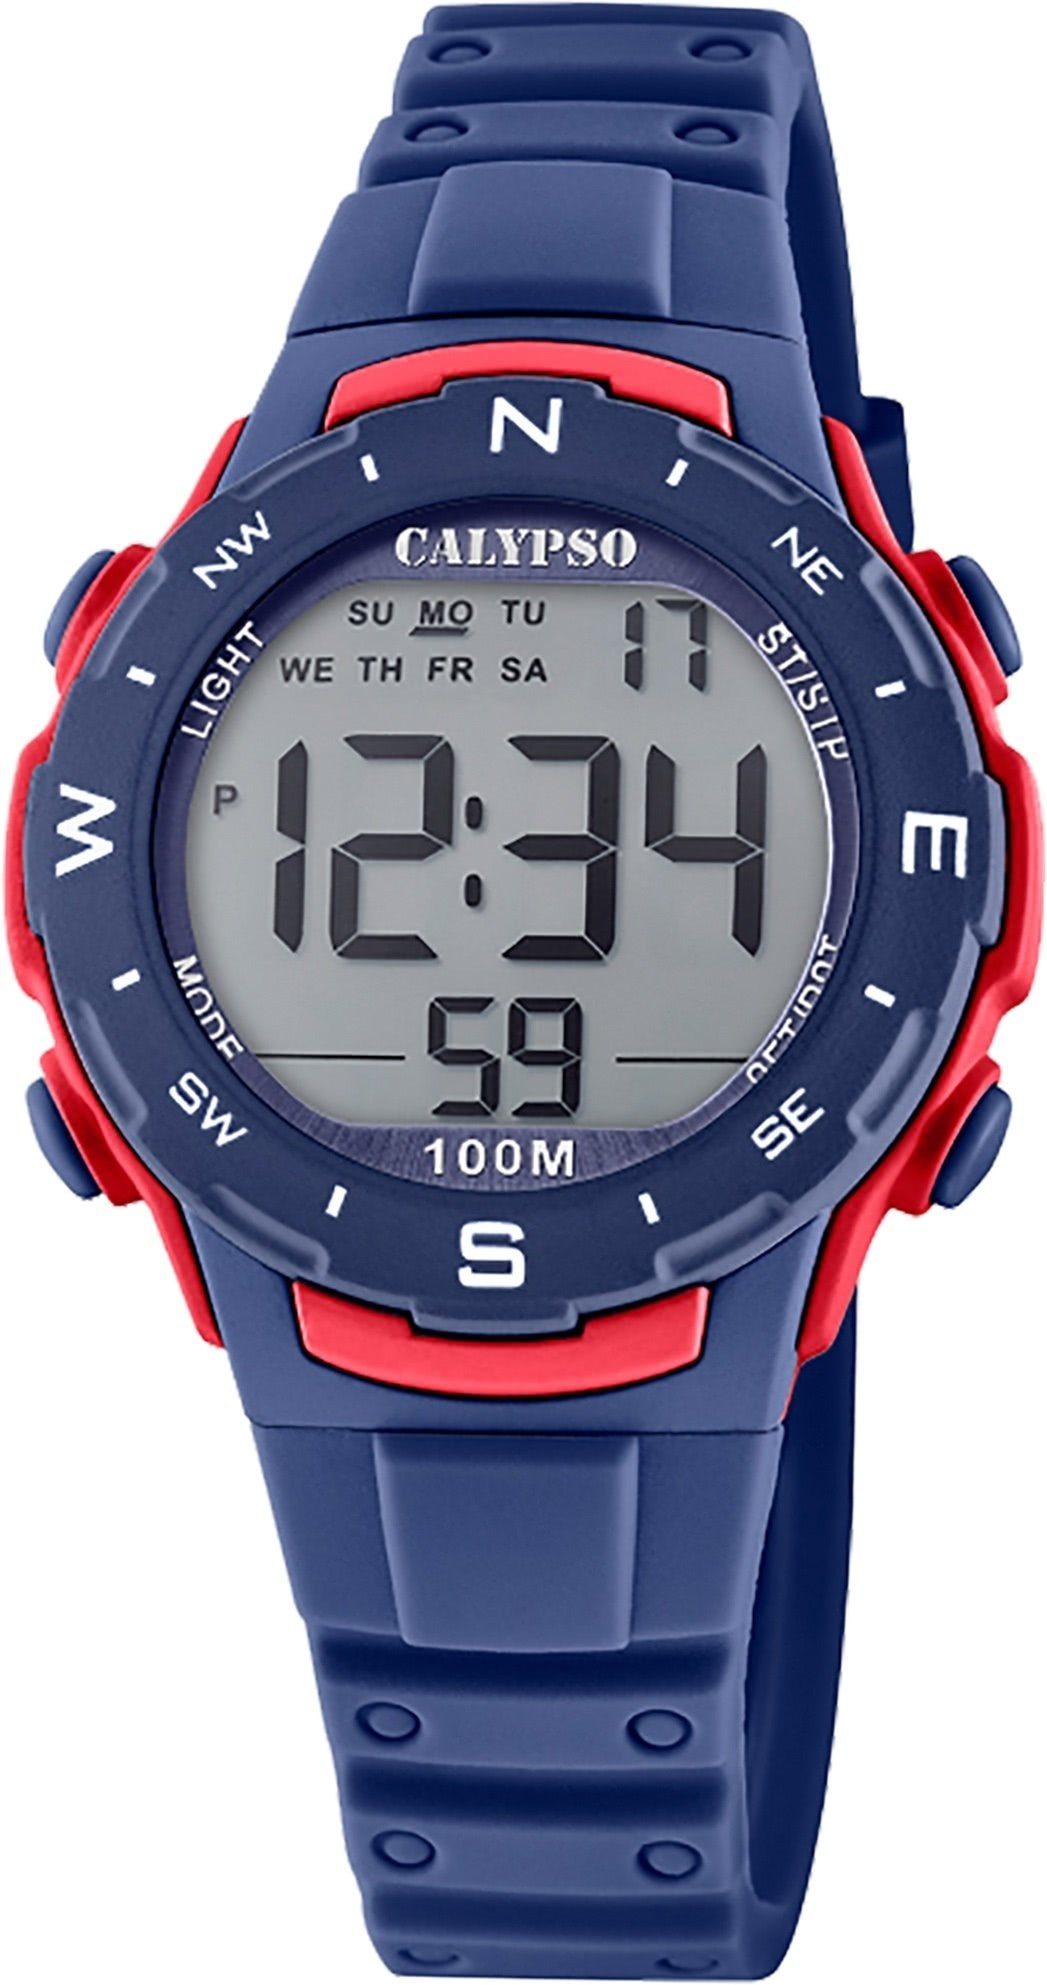 CALYPSO WATCHES Digitaluhr Calypso Unisex Uhr Digital K5801/4, Damen, Herrenuhr rund, mittel (ca. 35mm) Kunststoffband, Sport-Style